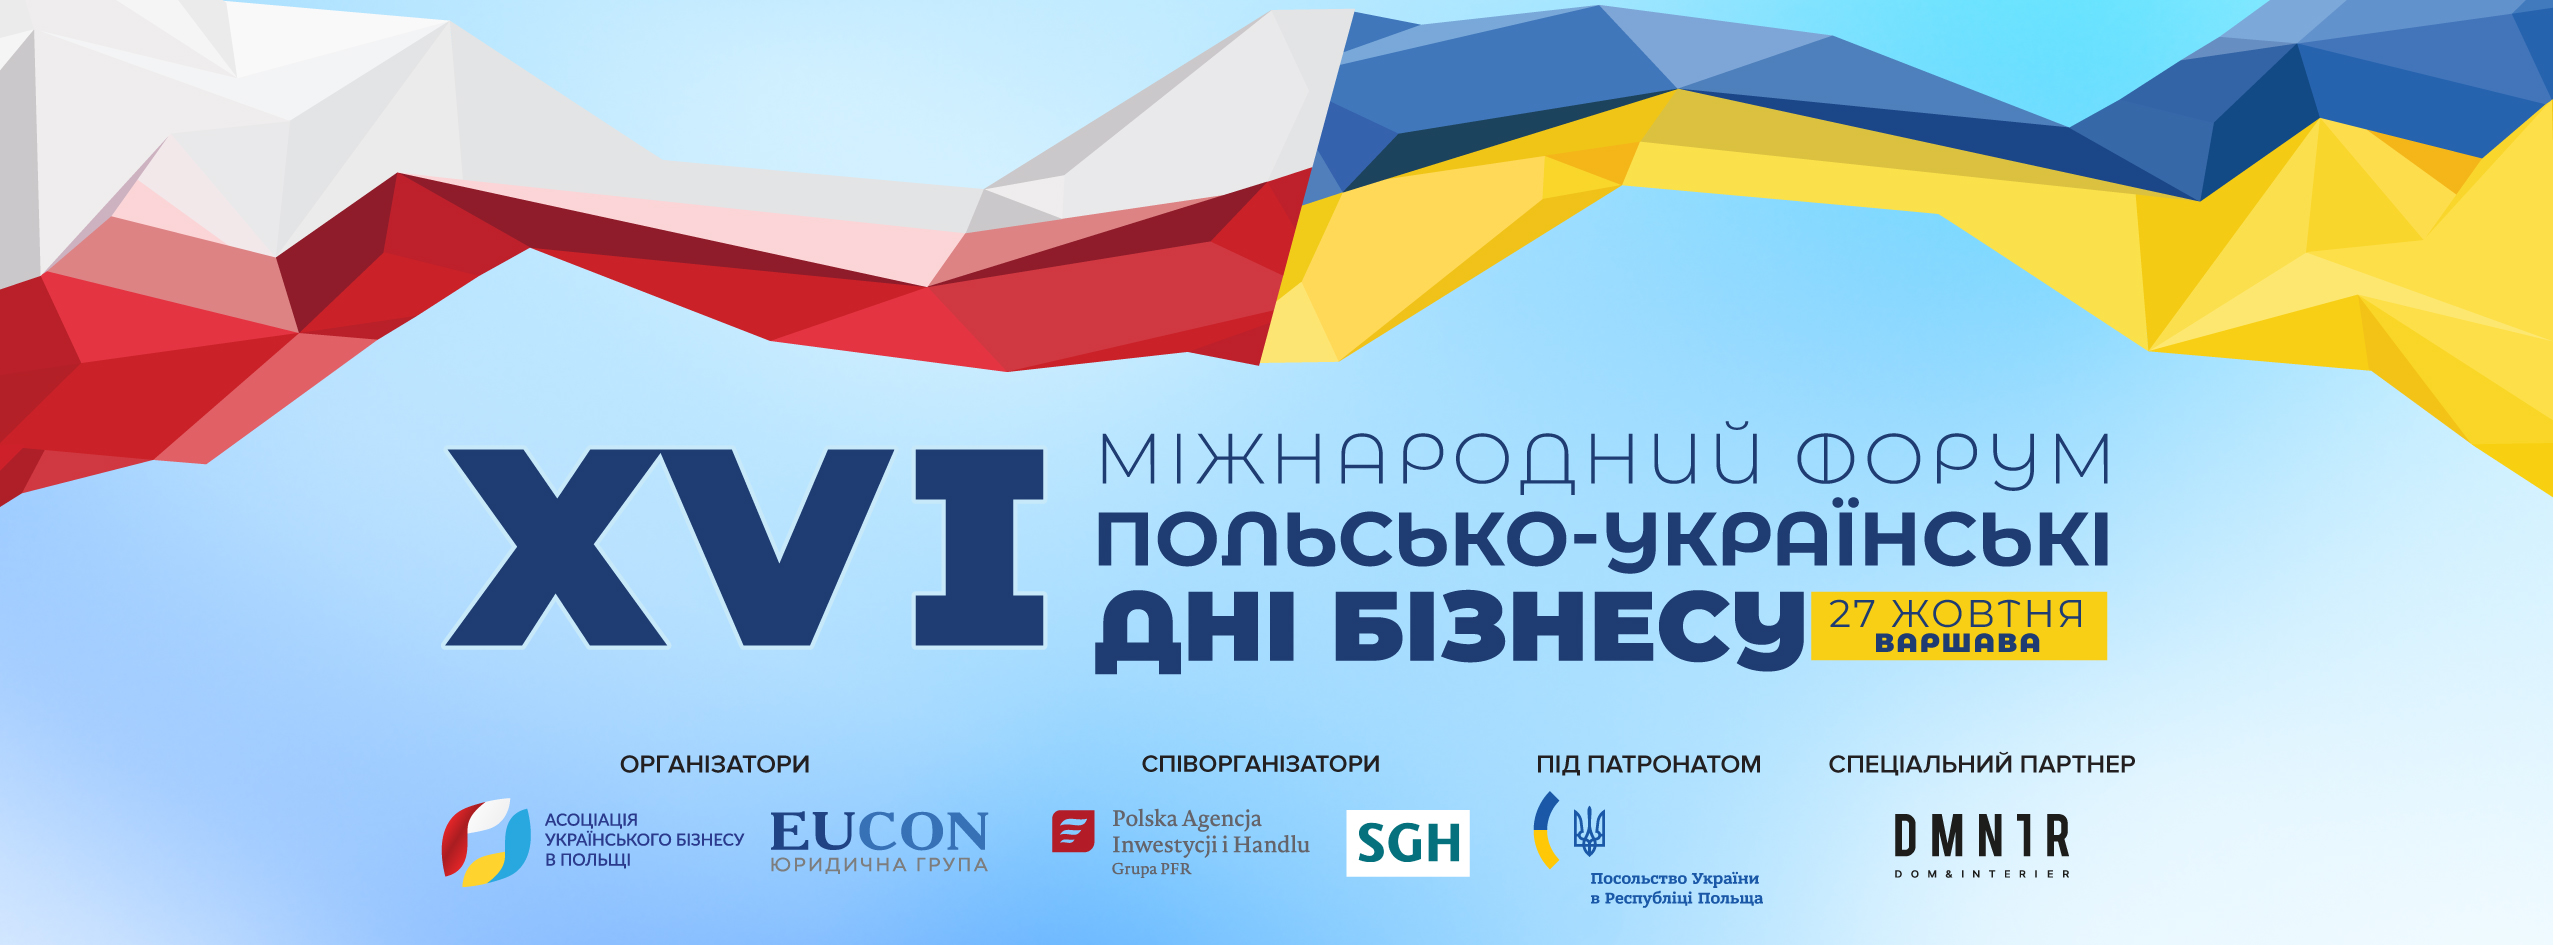 XVІ Міжнародний форум «Польсько-українські дні бізнесу»